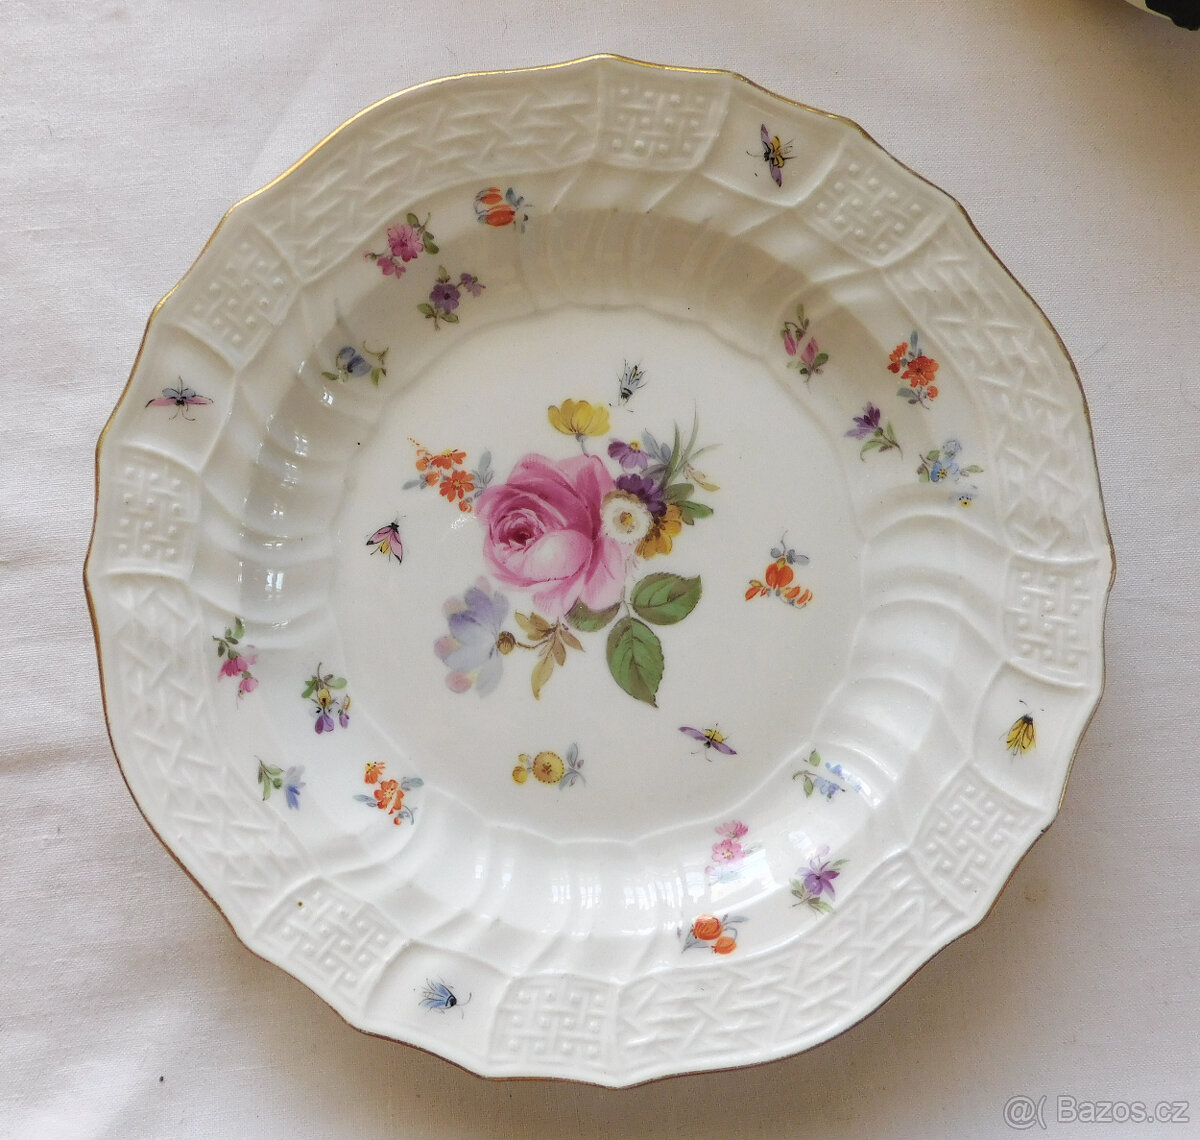 Porcelánový talíř - Míšeň, Meissen